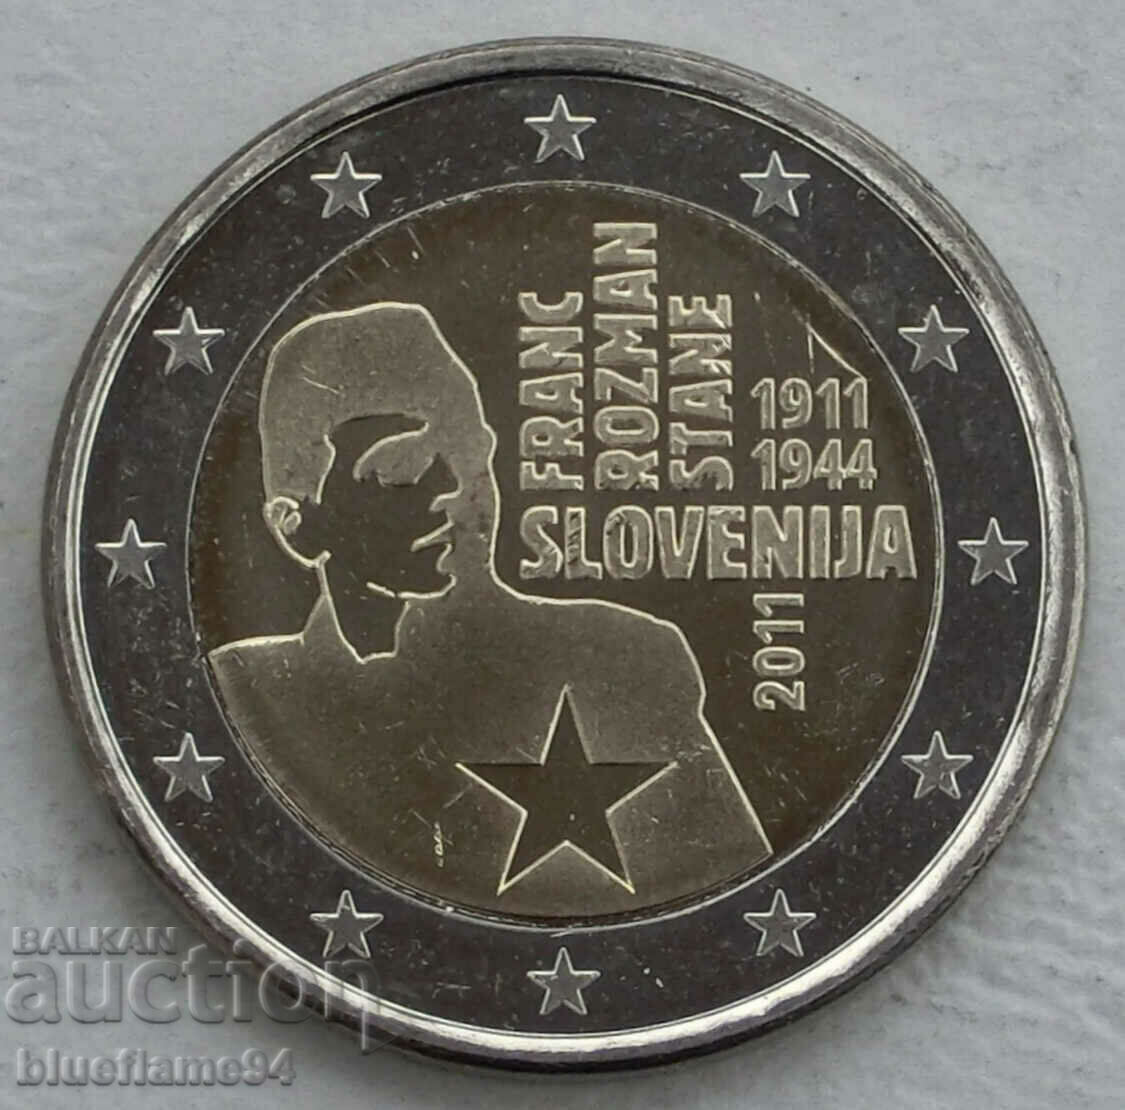 2 euro Slovenia 2011